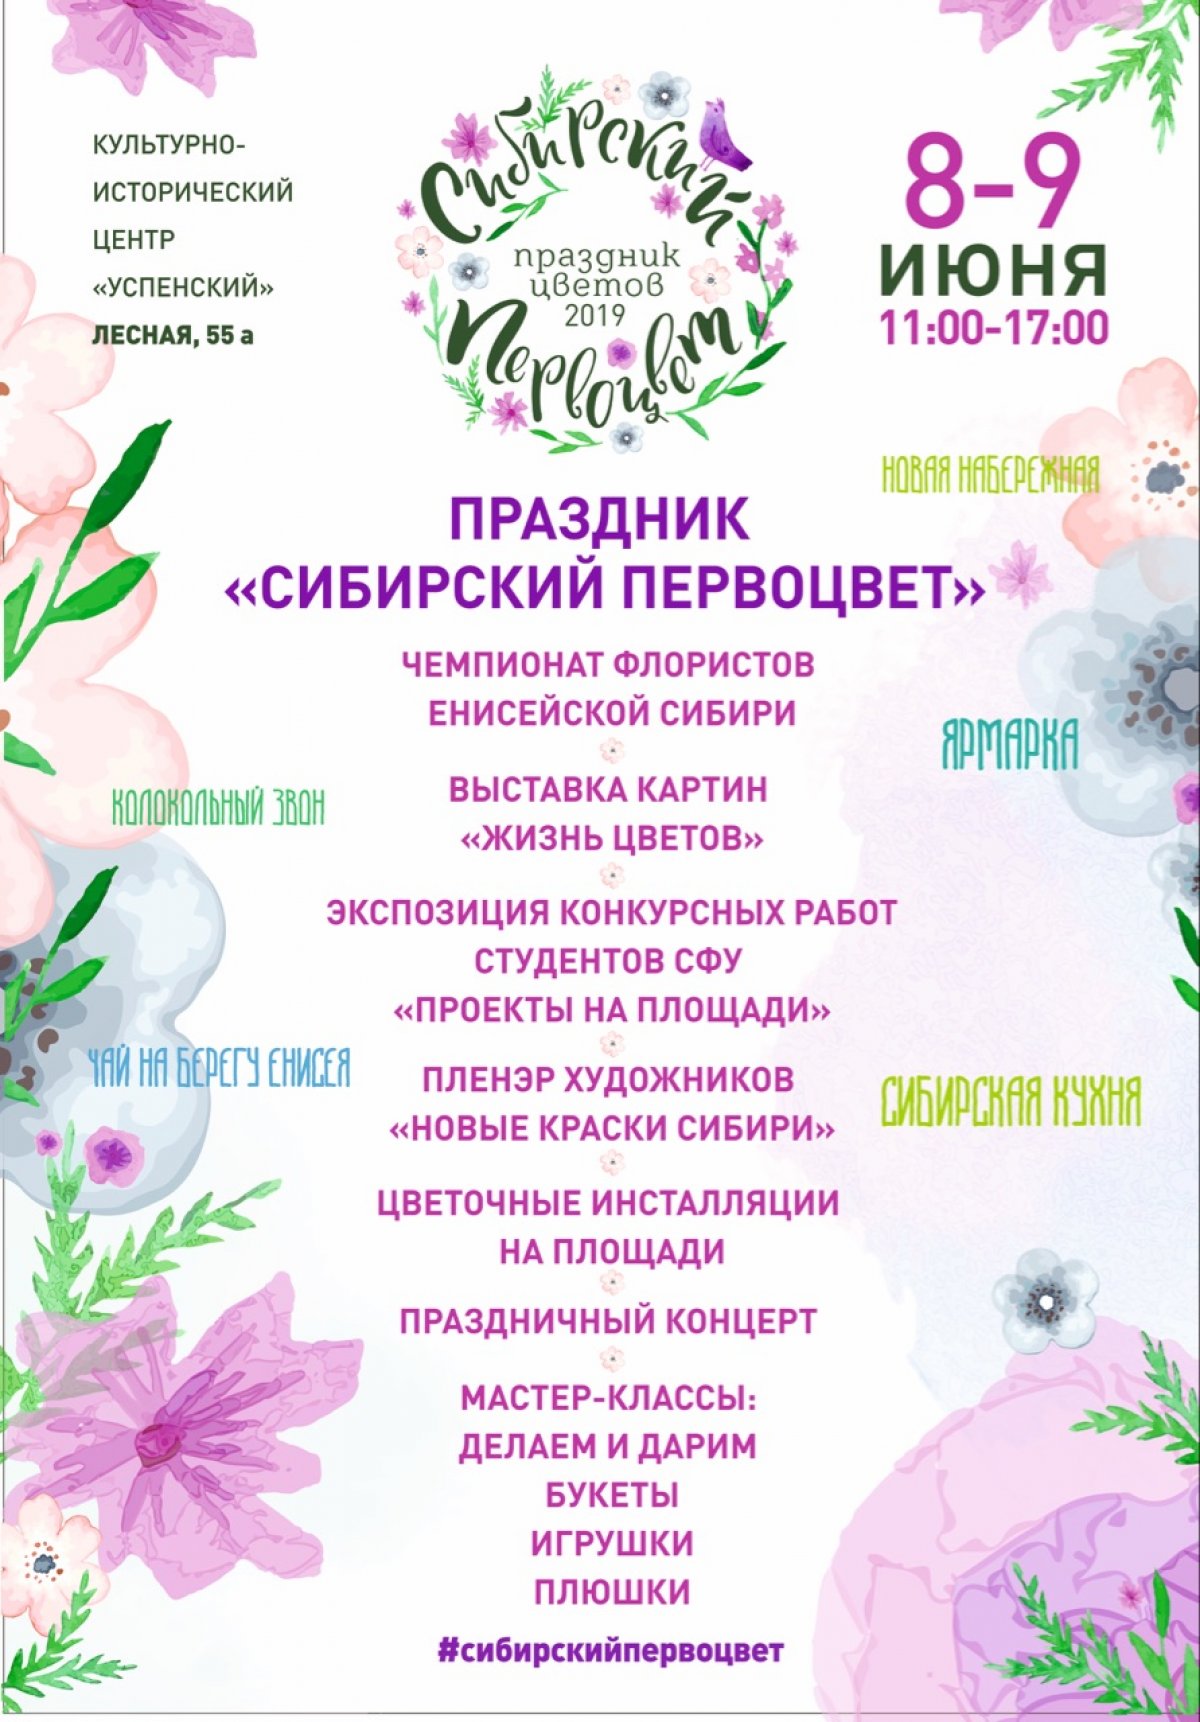 Красочный праздник "Сибирский первоцвет" ждет гостей на яркий летний праздник! Приходите!